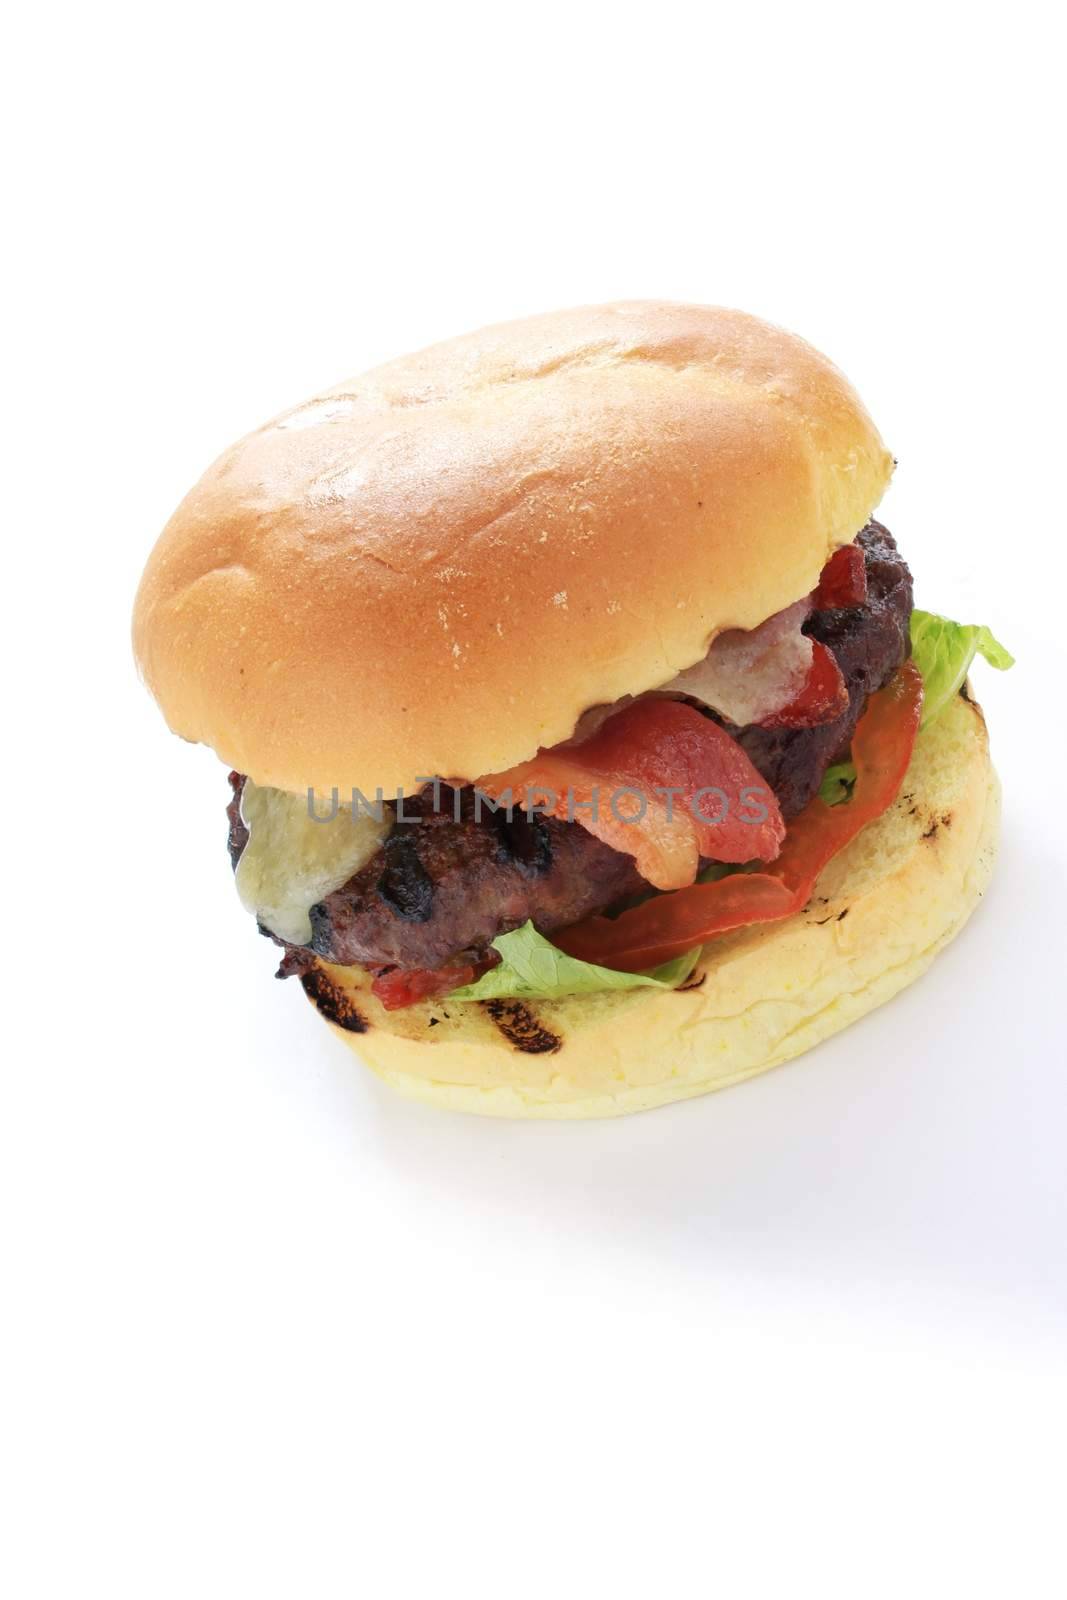 cbacon and cheese burger in brioche bun